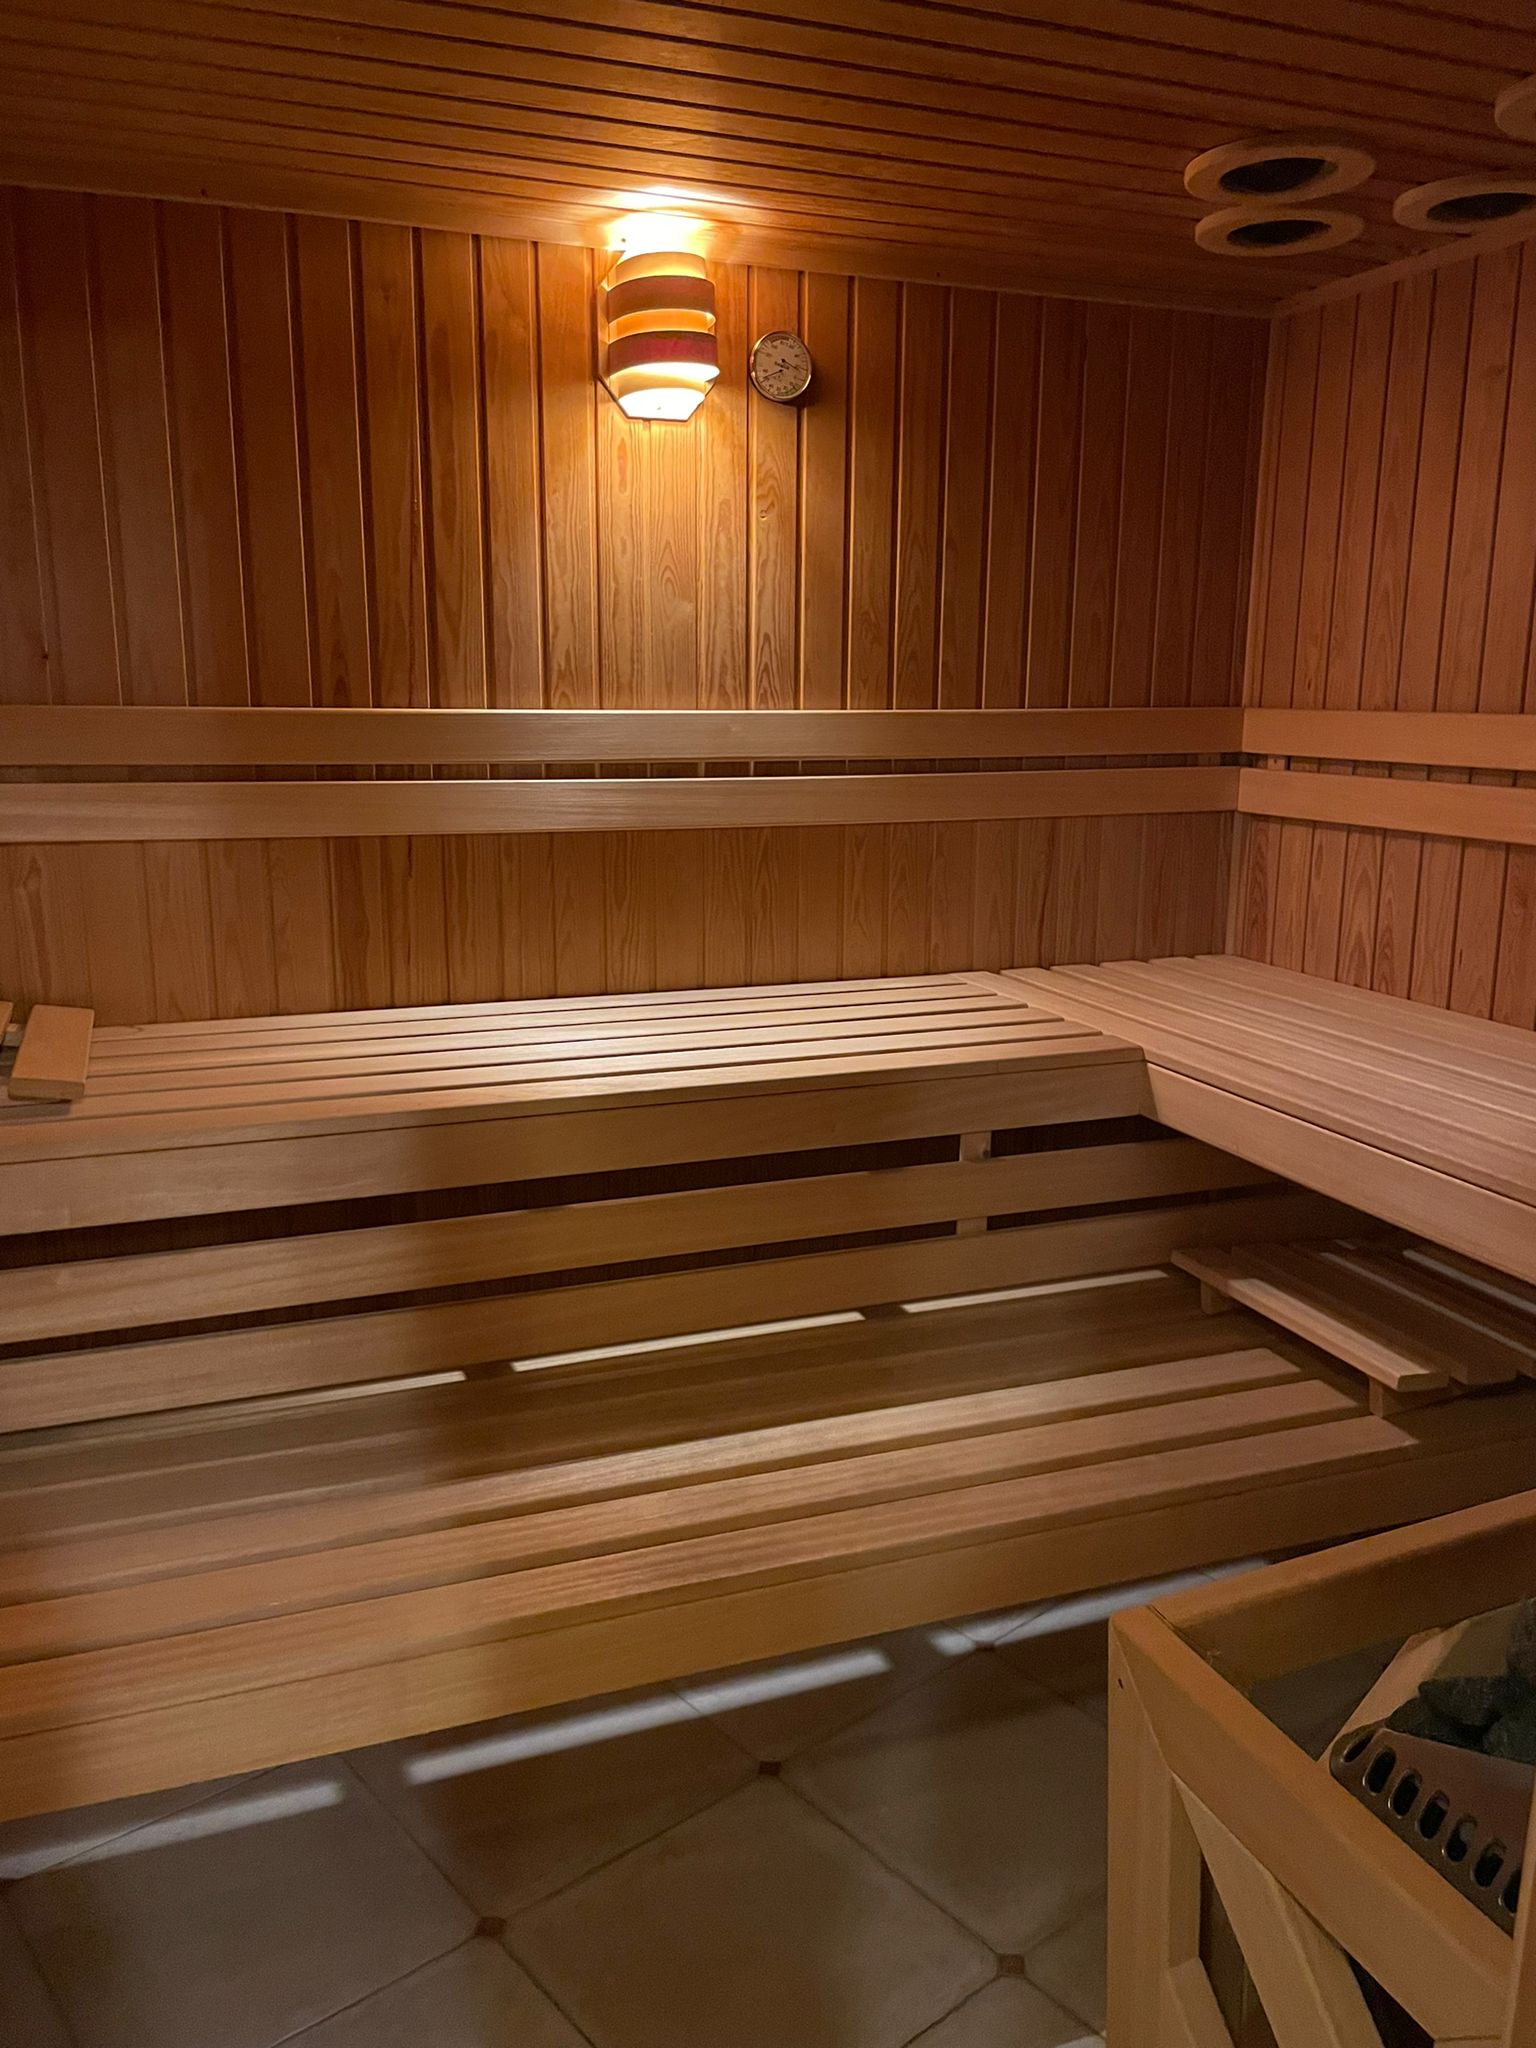 Bed en Breakfast Stiphout, boek uw verblijf met luxe voorzieningen zoals onze sauna.